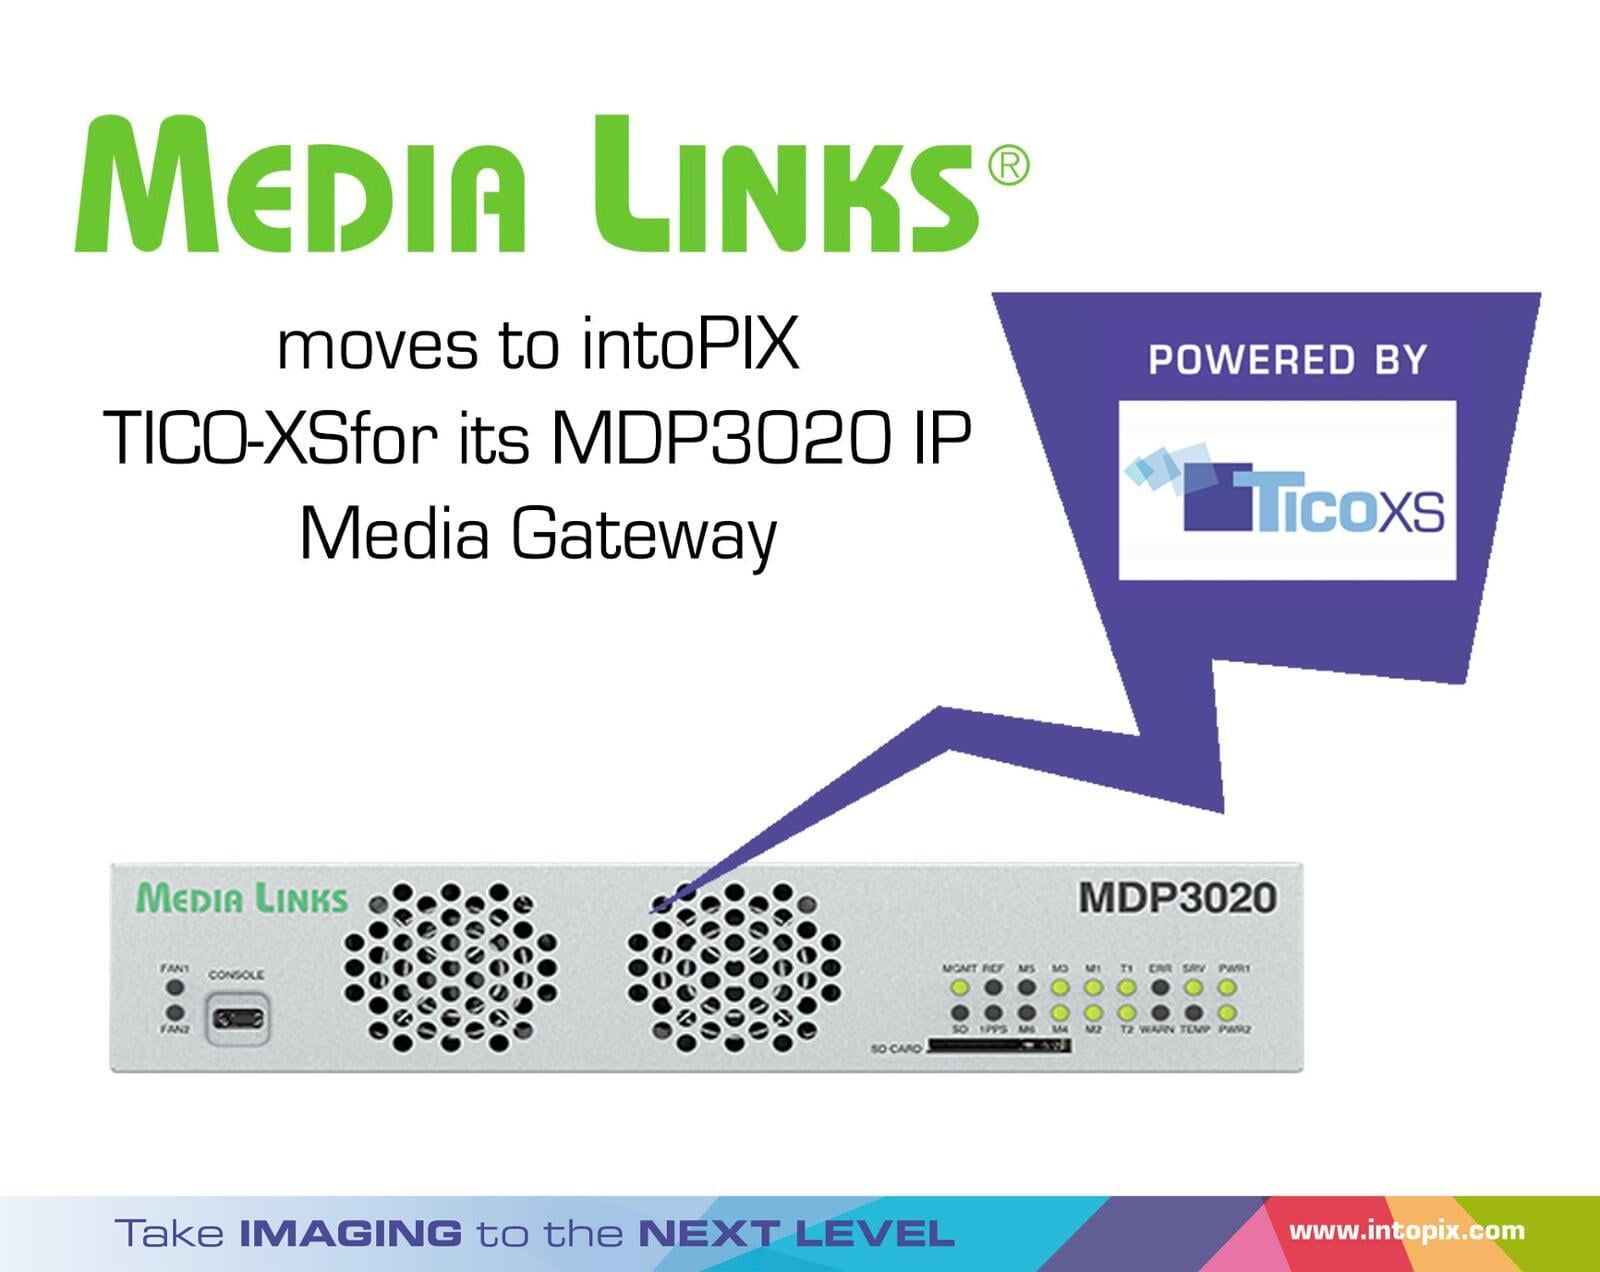 媒体链接公司的MDP3020IP 媒体网关移至-intoPIX TICOXS。